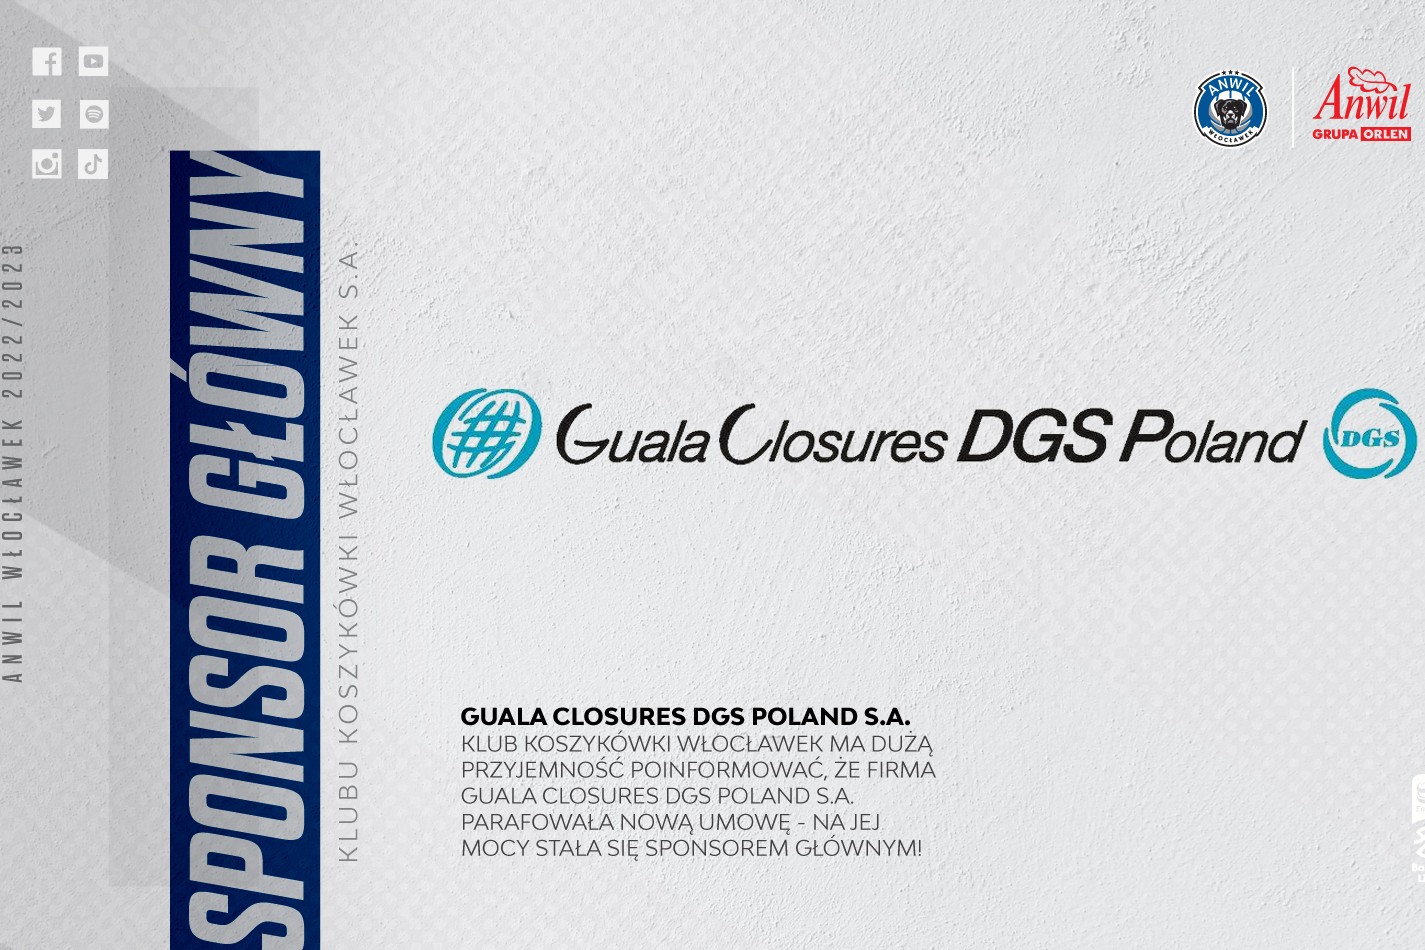 Guala Closures DGS Poland sponsorem głównym! 